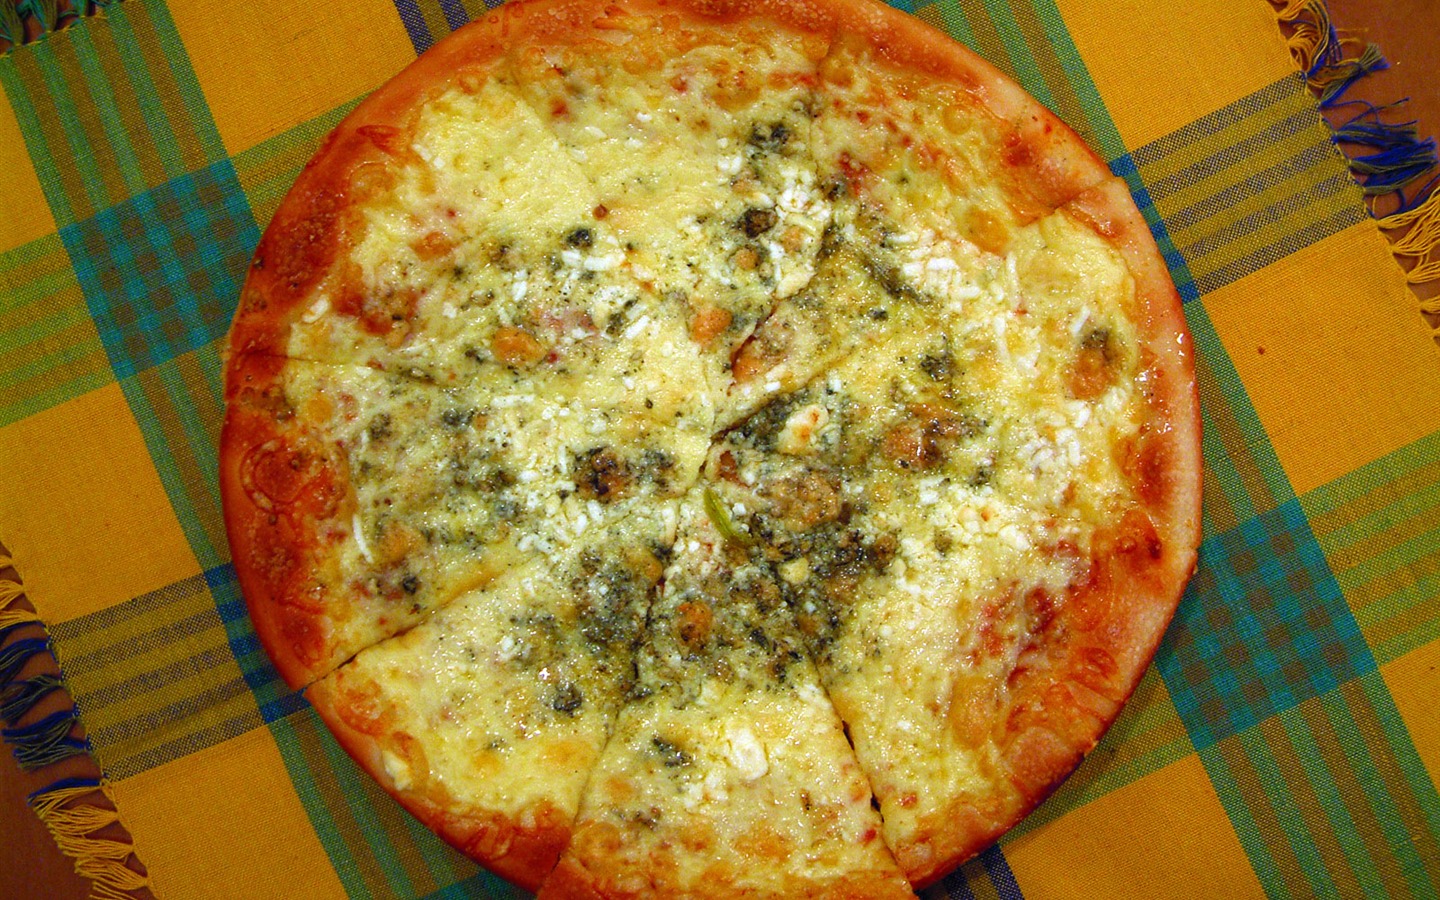 Fondos de pizzerías de Alimentos (1) #15 - 1440x900